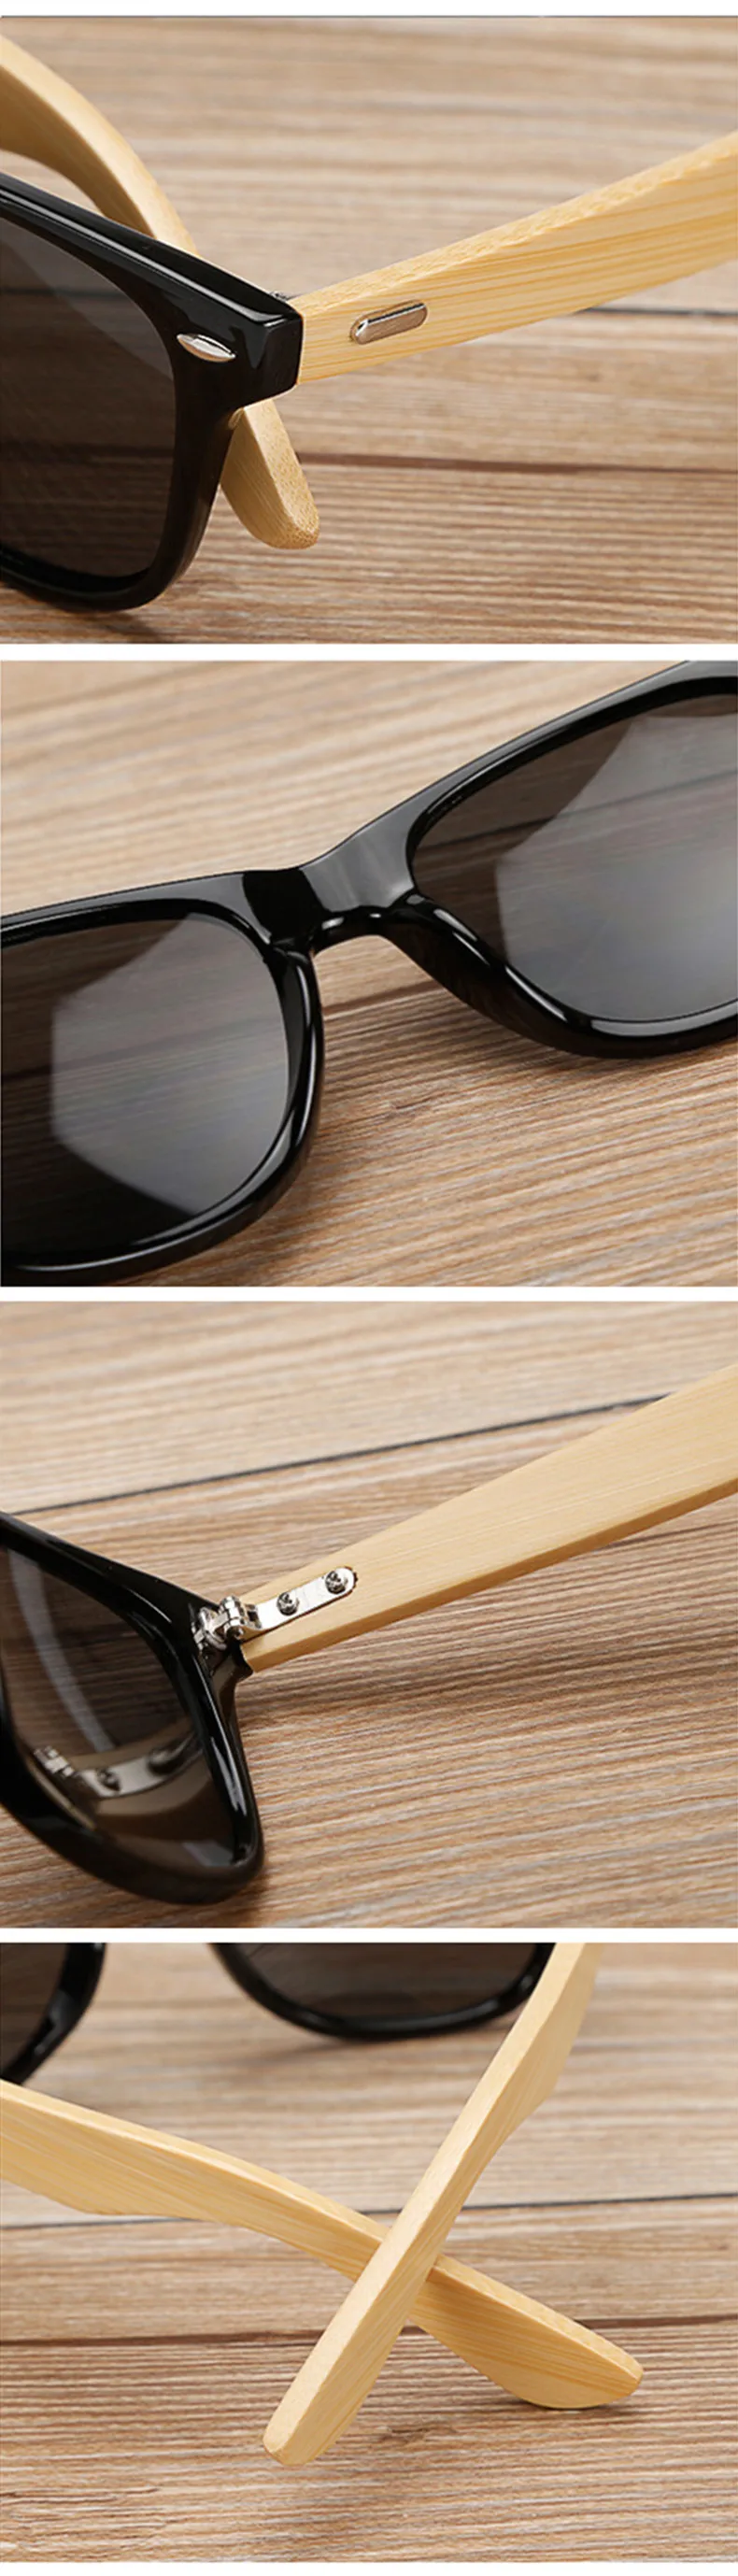 Oulylan Винтажные Солнцезащитные очки с деревянными ножками для мужчин и женщин, роскошные брендовые дизайнерские бамбуковые солнцезащитные очки, женские ретро очки UV400 для вождения